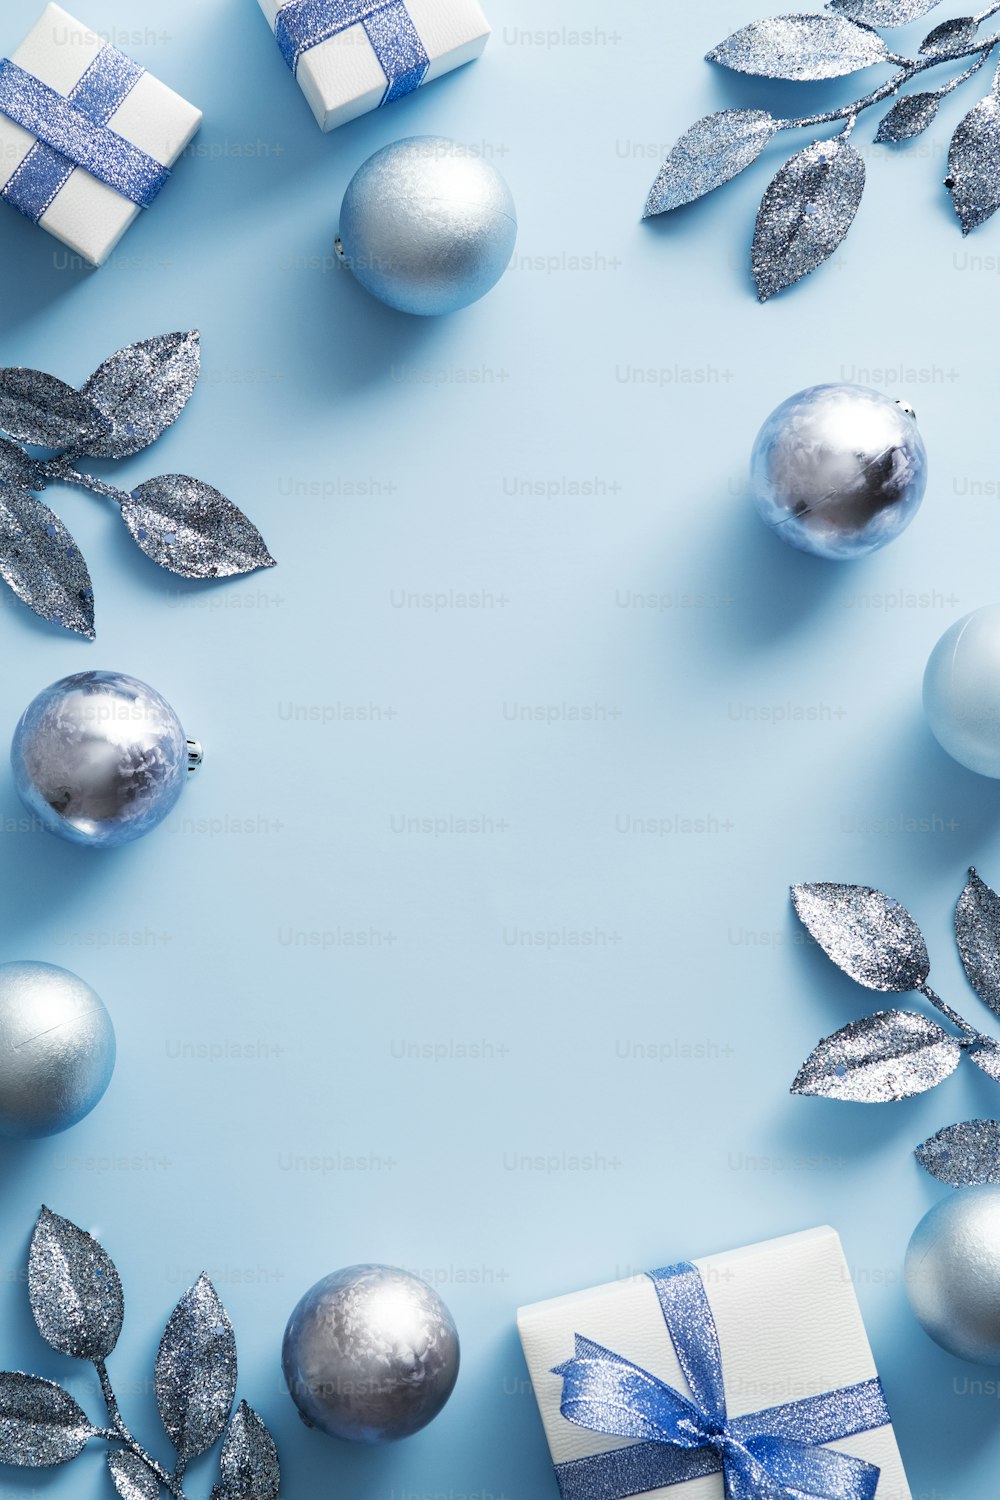 Quadro de Natal com decorações modernas, bolas, caixas de presente no fundo azul. Design de cartaz de Natal, maquete de convite de festa de Ano Novo.